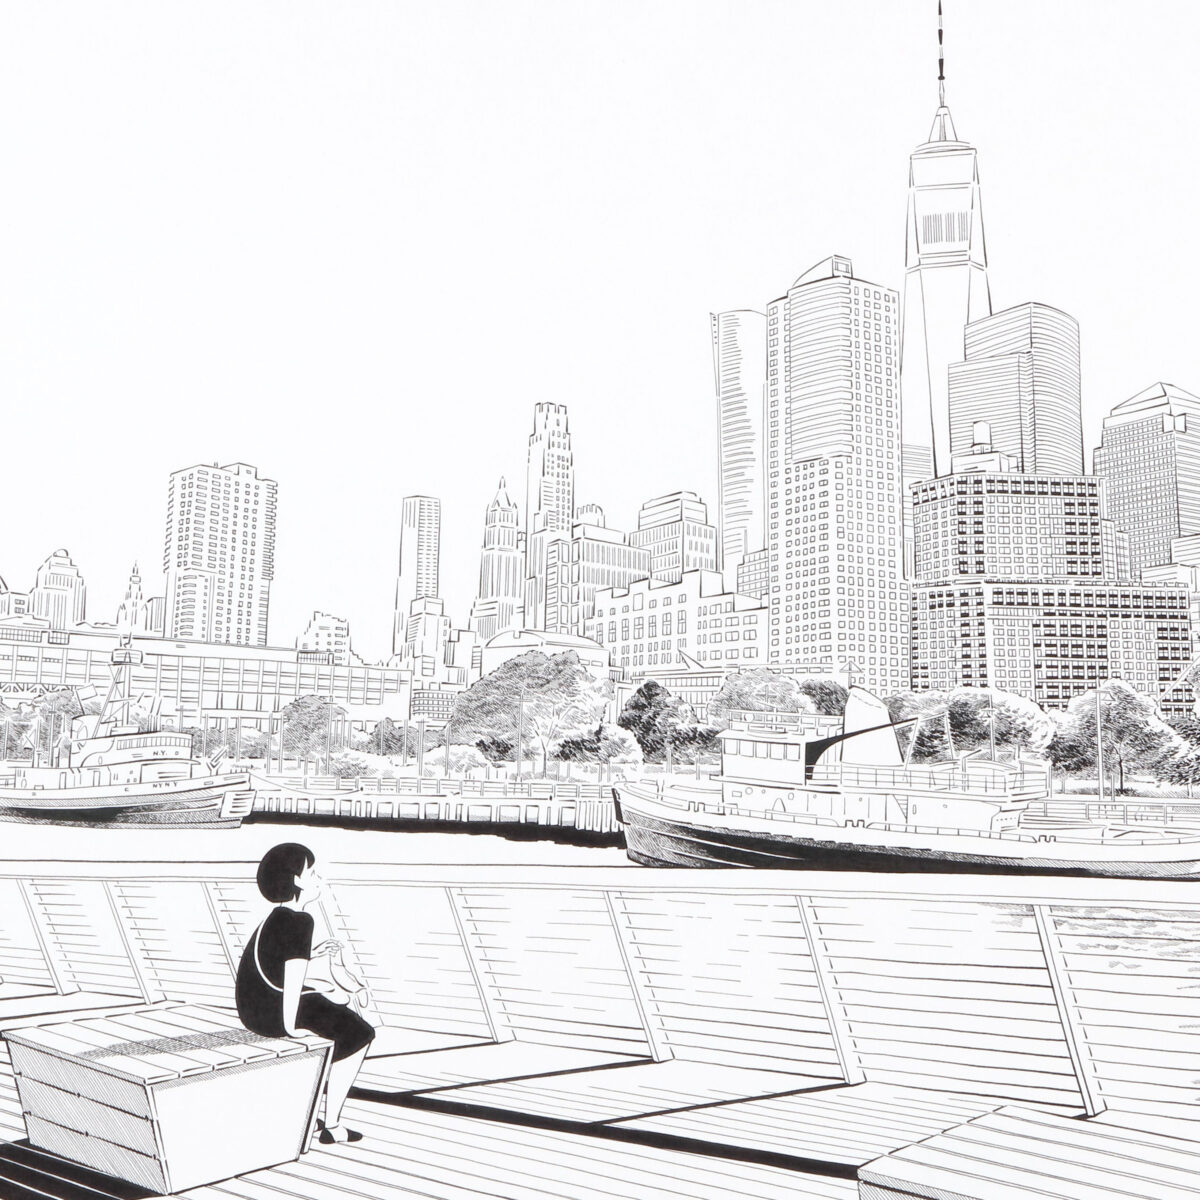 近藤聡乃さんの「ニューヨークで考え中」ドローイング作品展示がミヅマアートギャラリ...